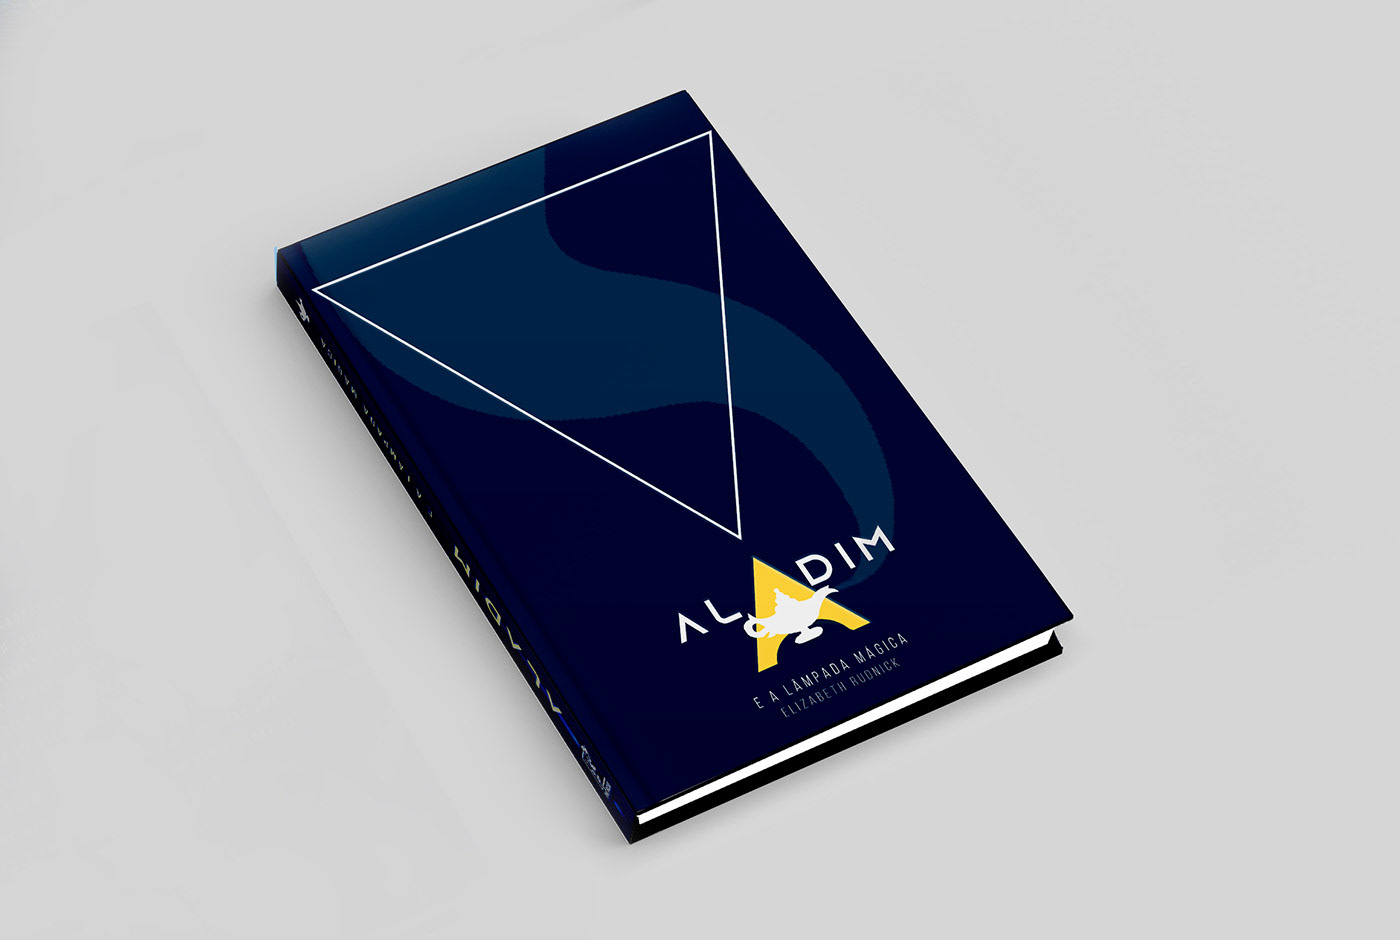 aladdin book capa de livro capista design gráfico diagramação editorial graphic design  Jasmine Layout